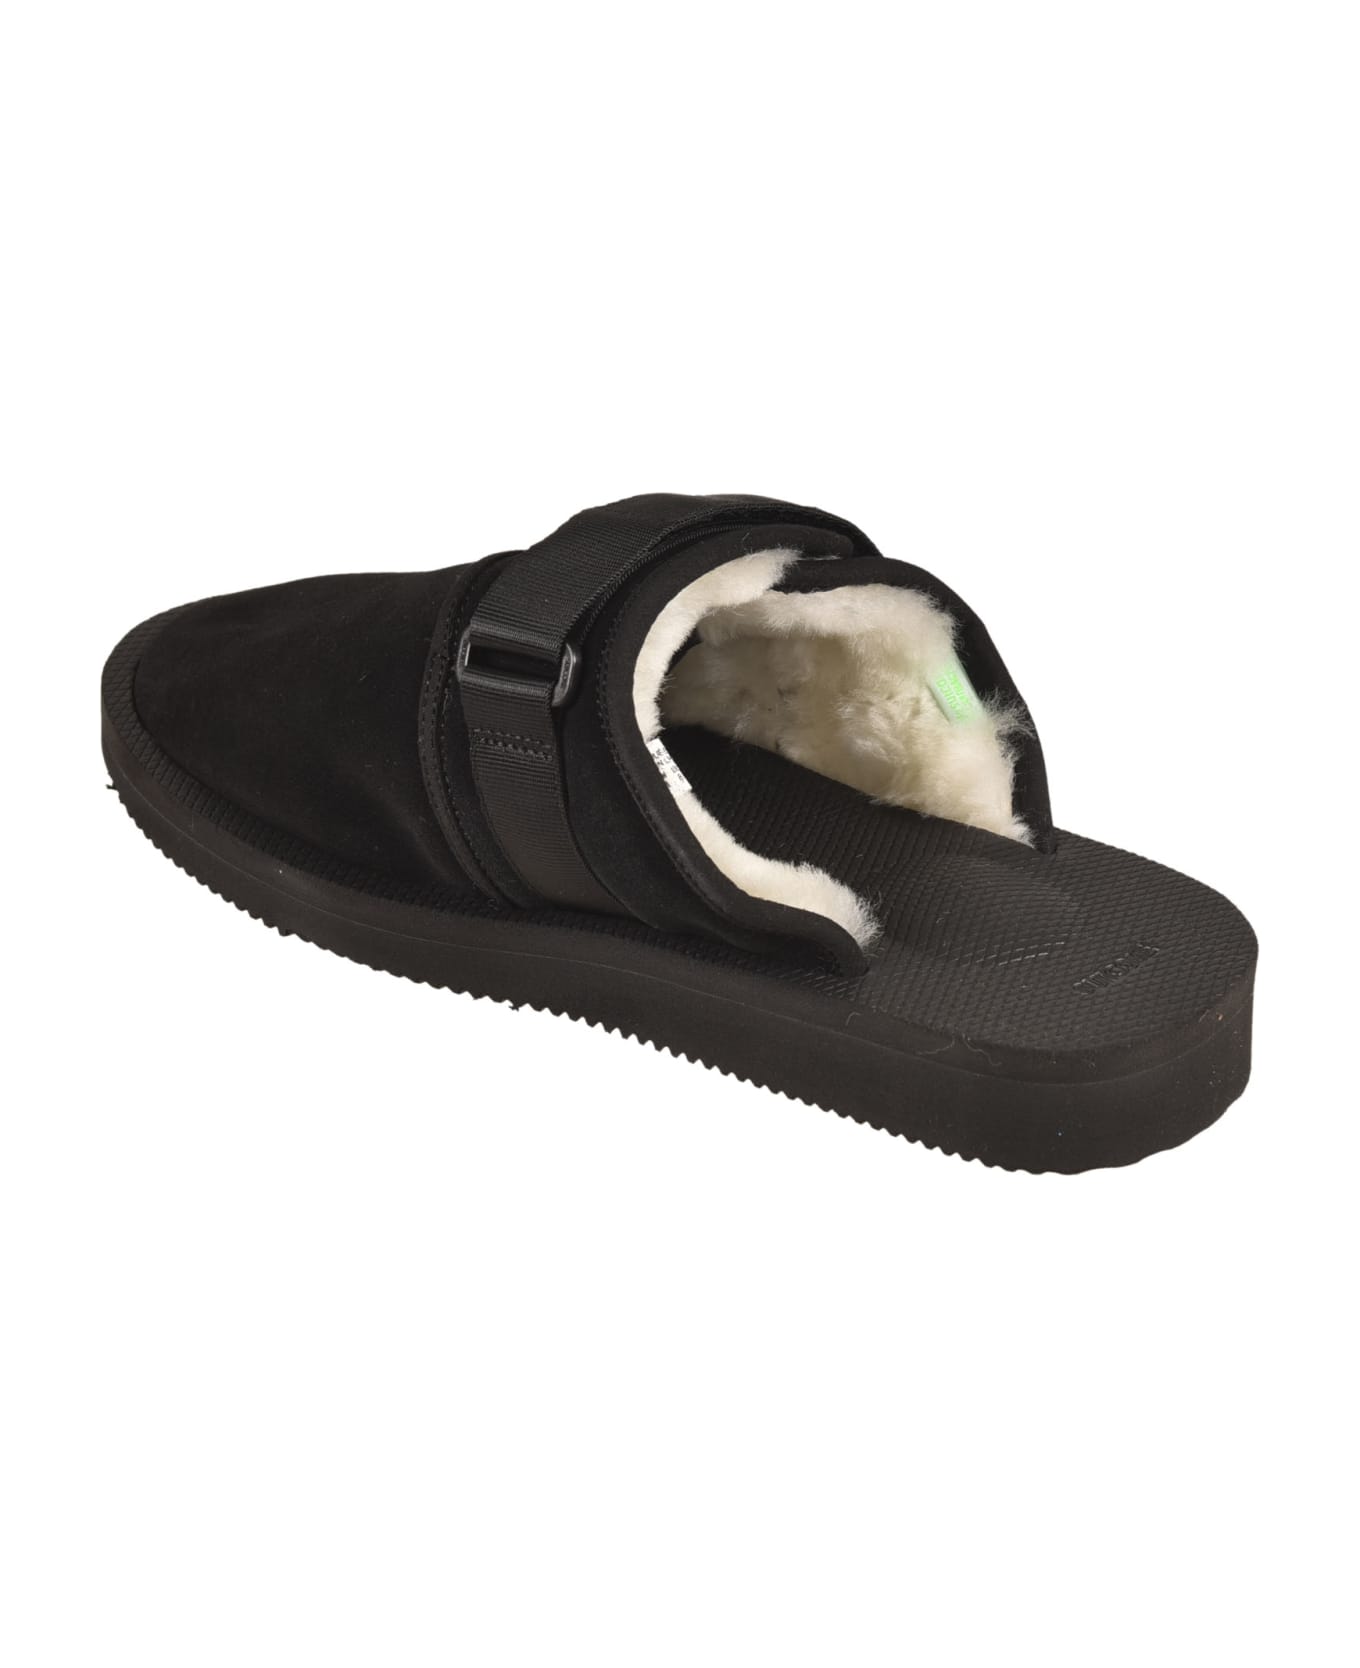 SUICOKE Fur Applique Side Strap Sandals - Black